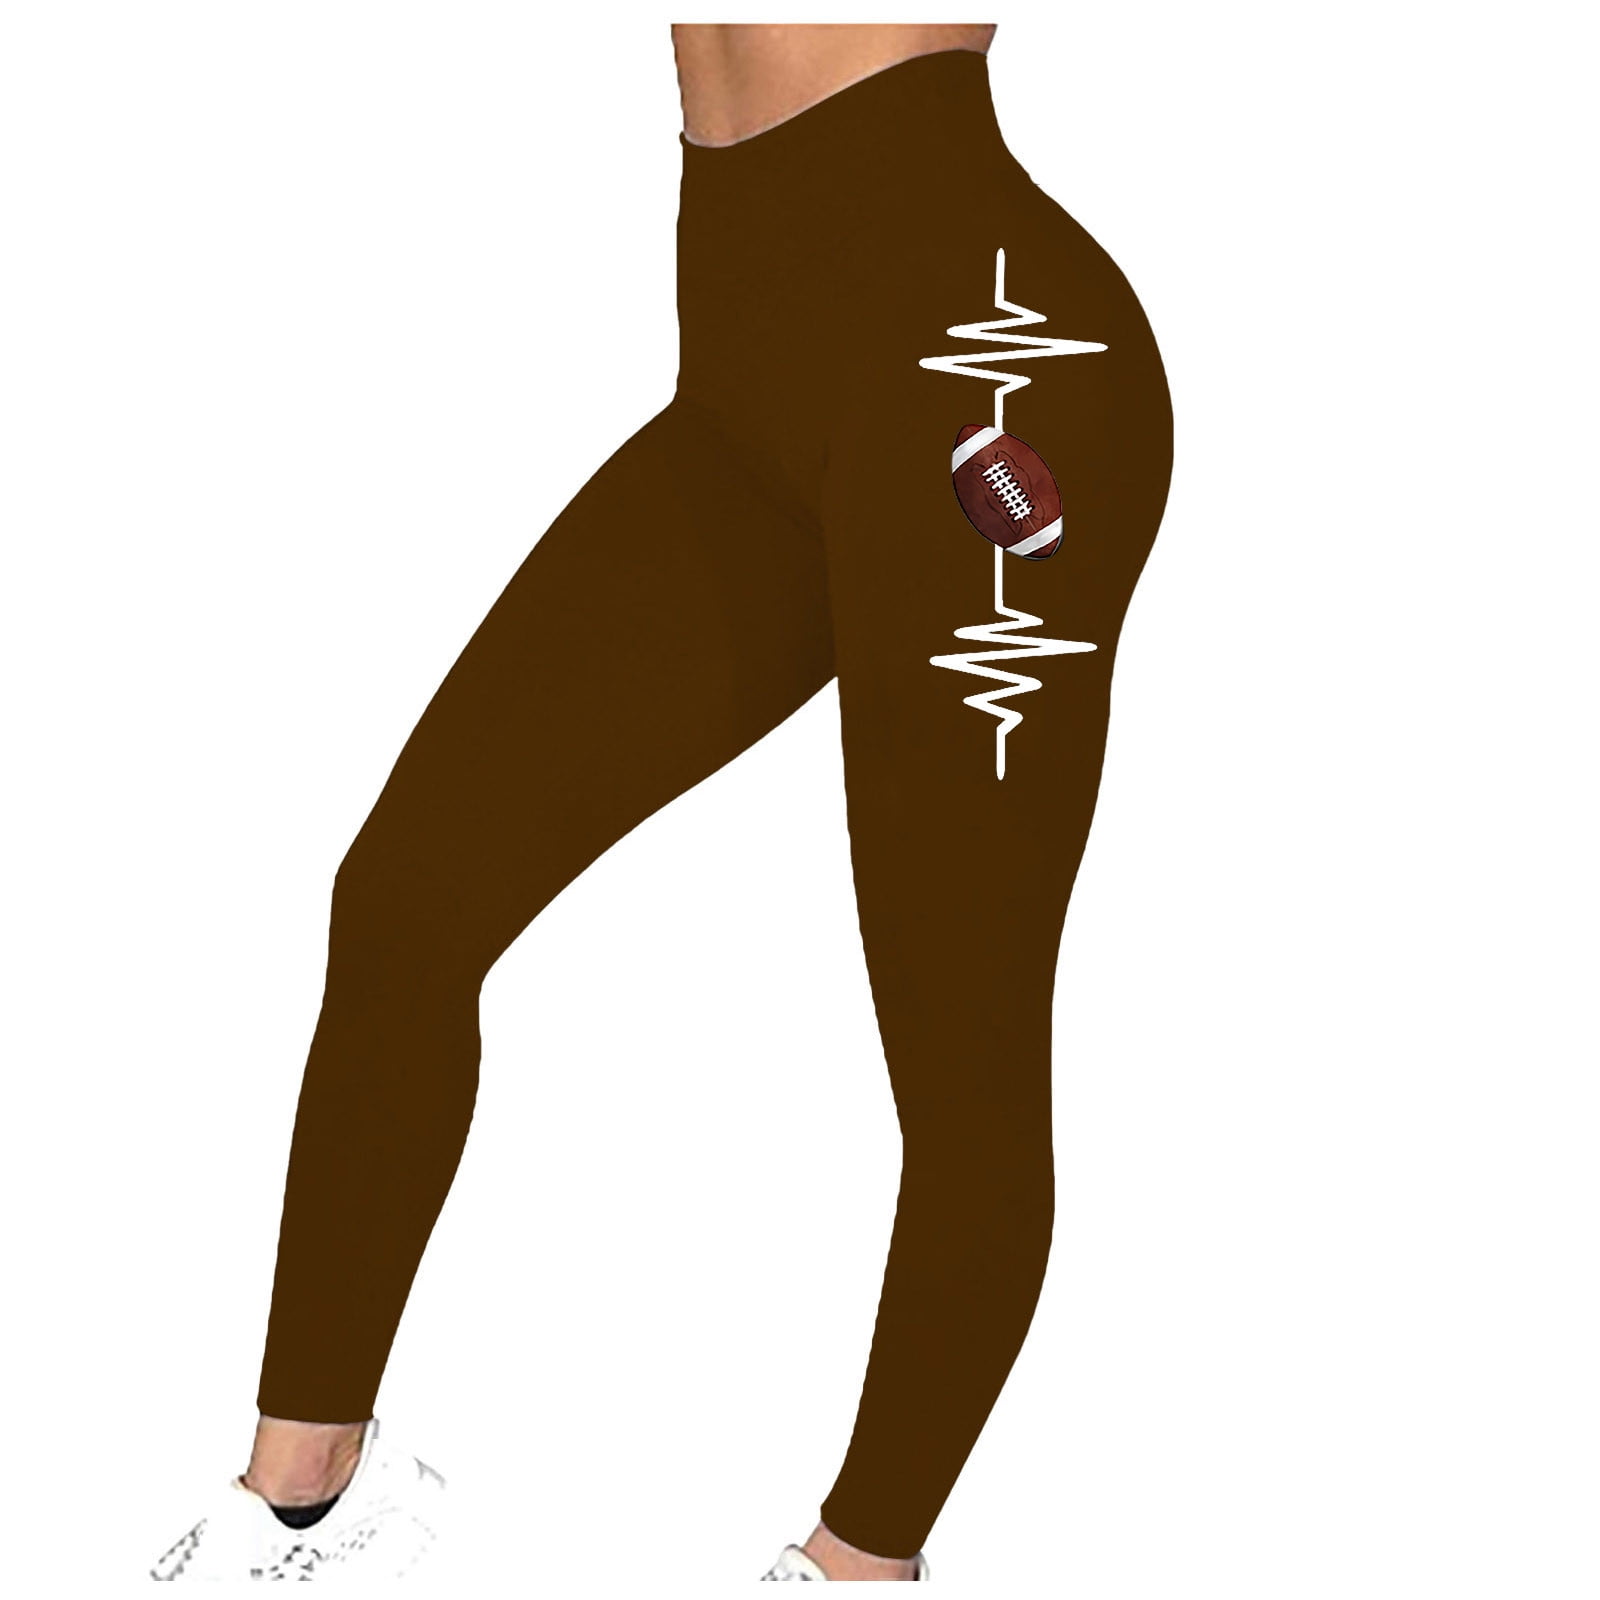  V-Back Butt Lifting Leggings For Women Scrunch Butt Lifting  Leggings High Waisted Workout Gym Yoga Pants